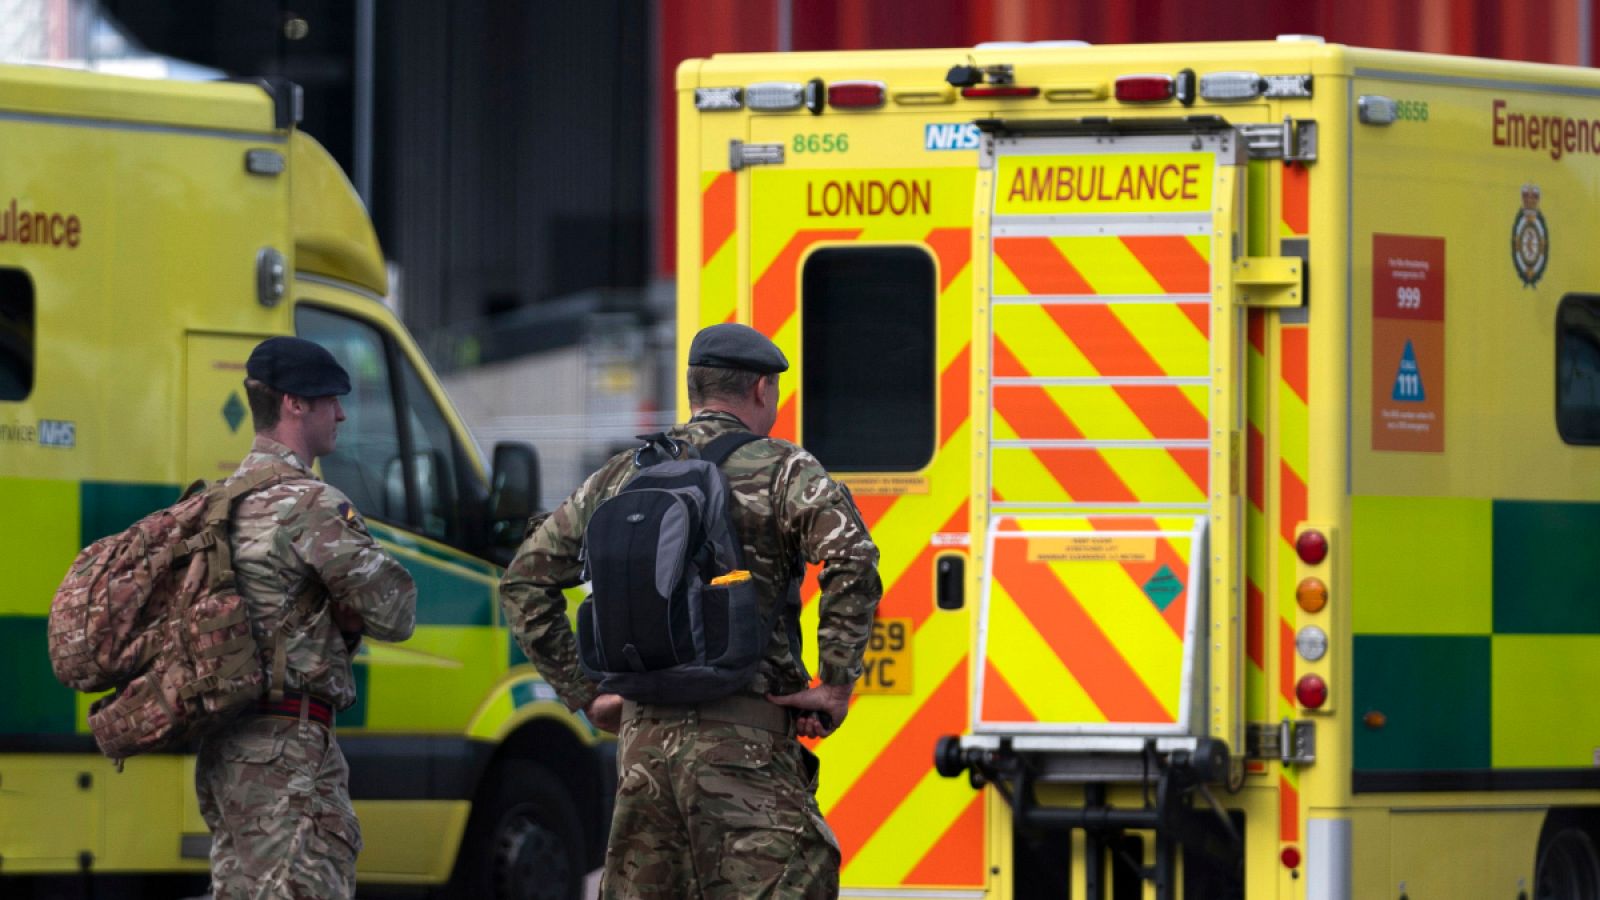 Imagen de un ambulancia de Londres